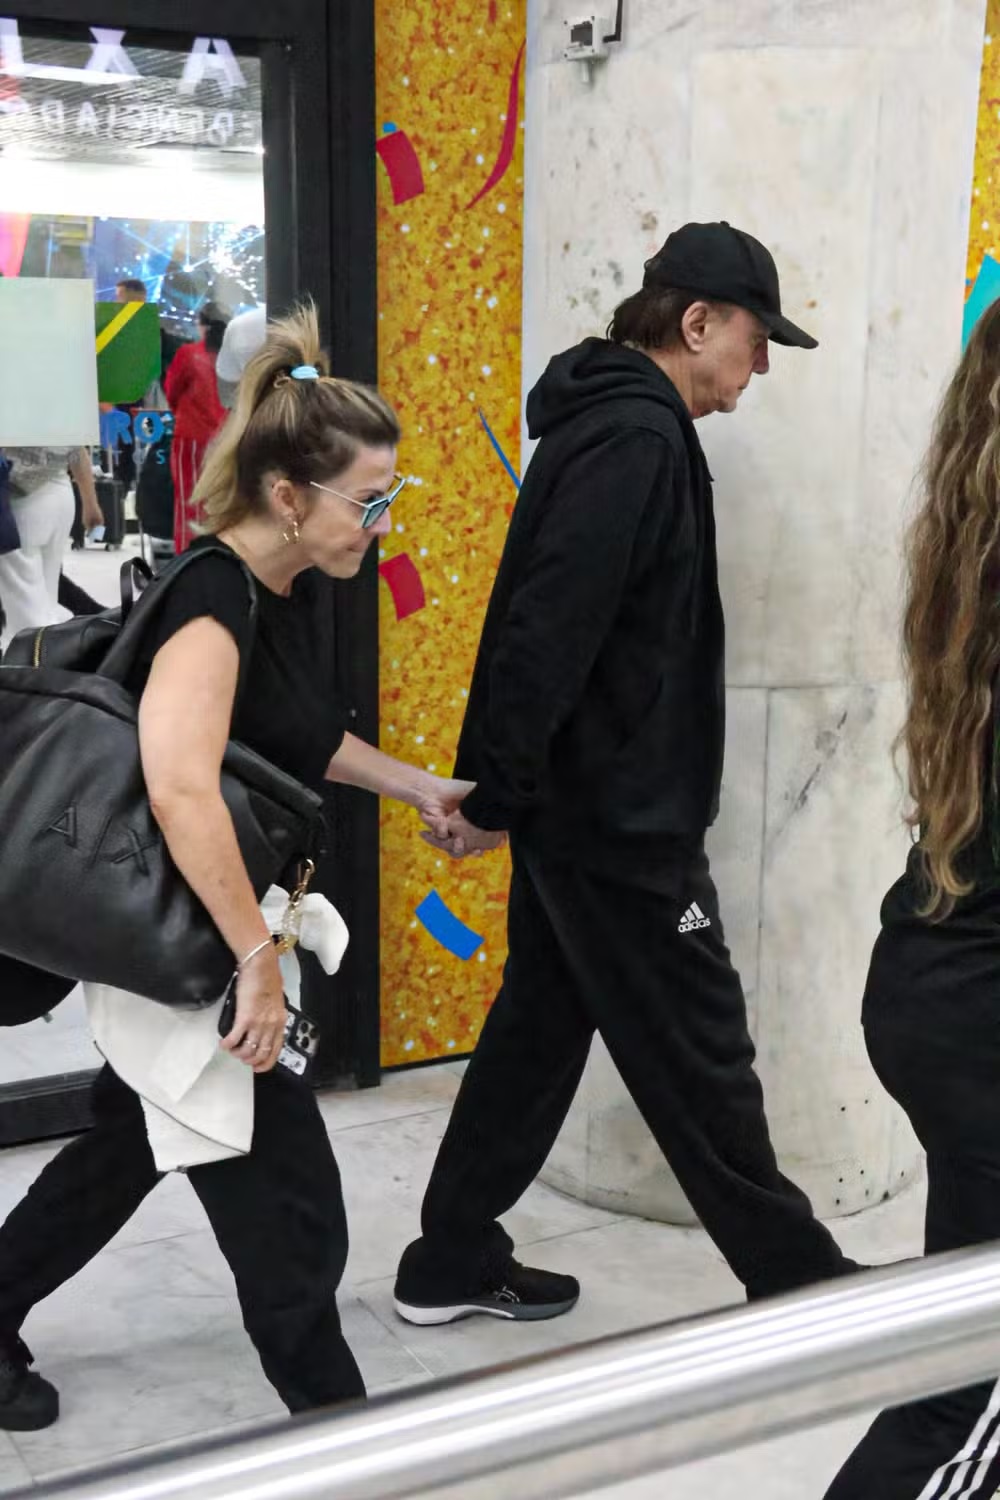 Discretos, Fábio Jr. faz raríssima aparição pública com esposa em aeroporto